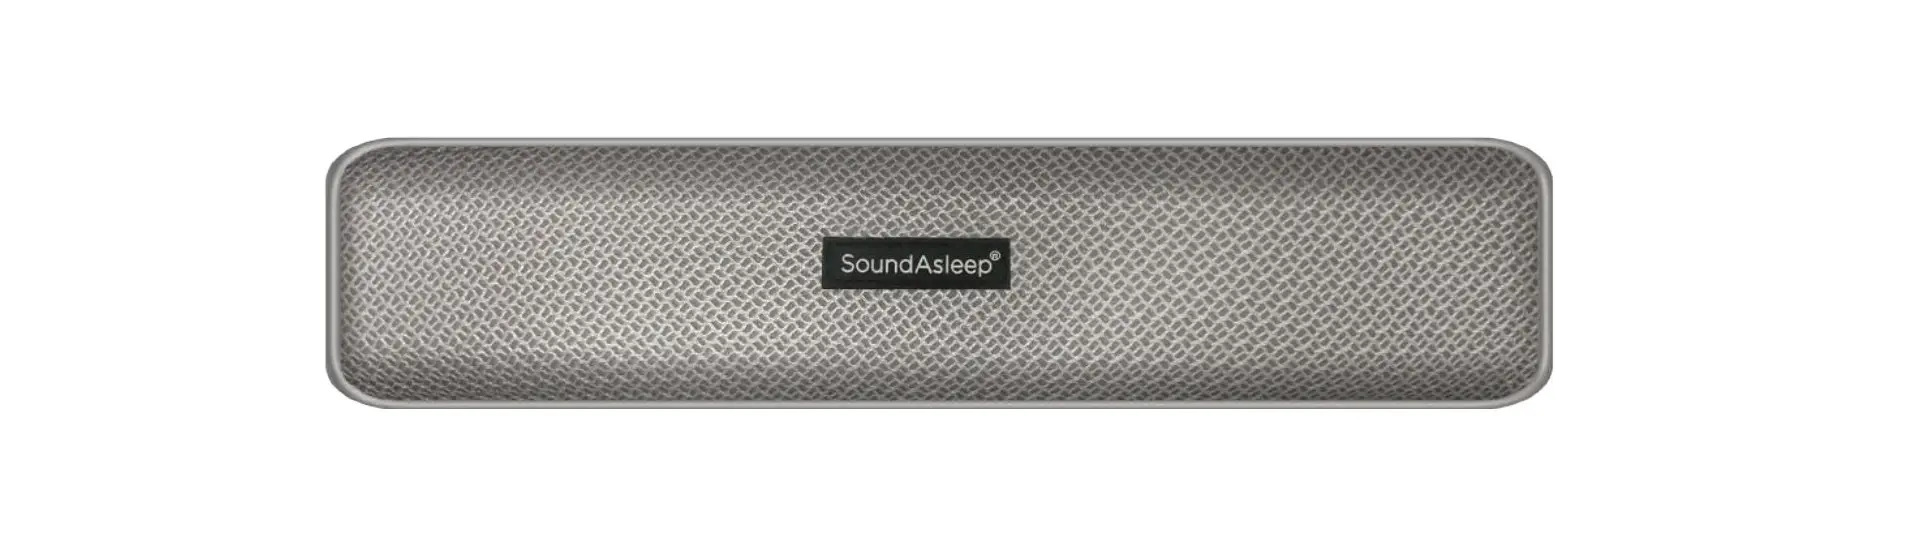 Sound Bar Bluetooth Pillow Speaker